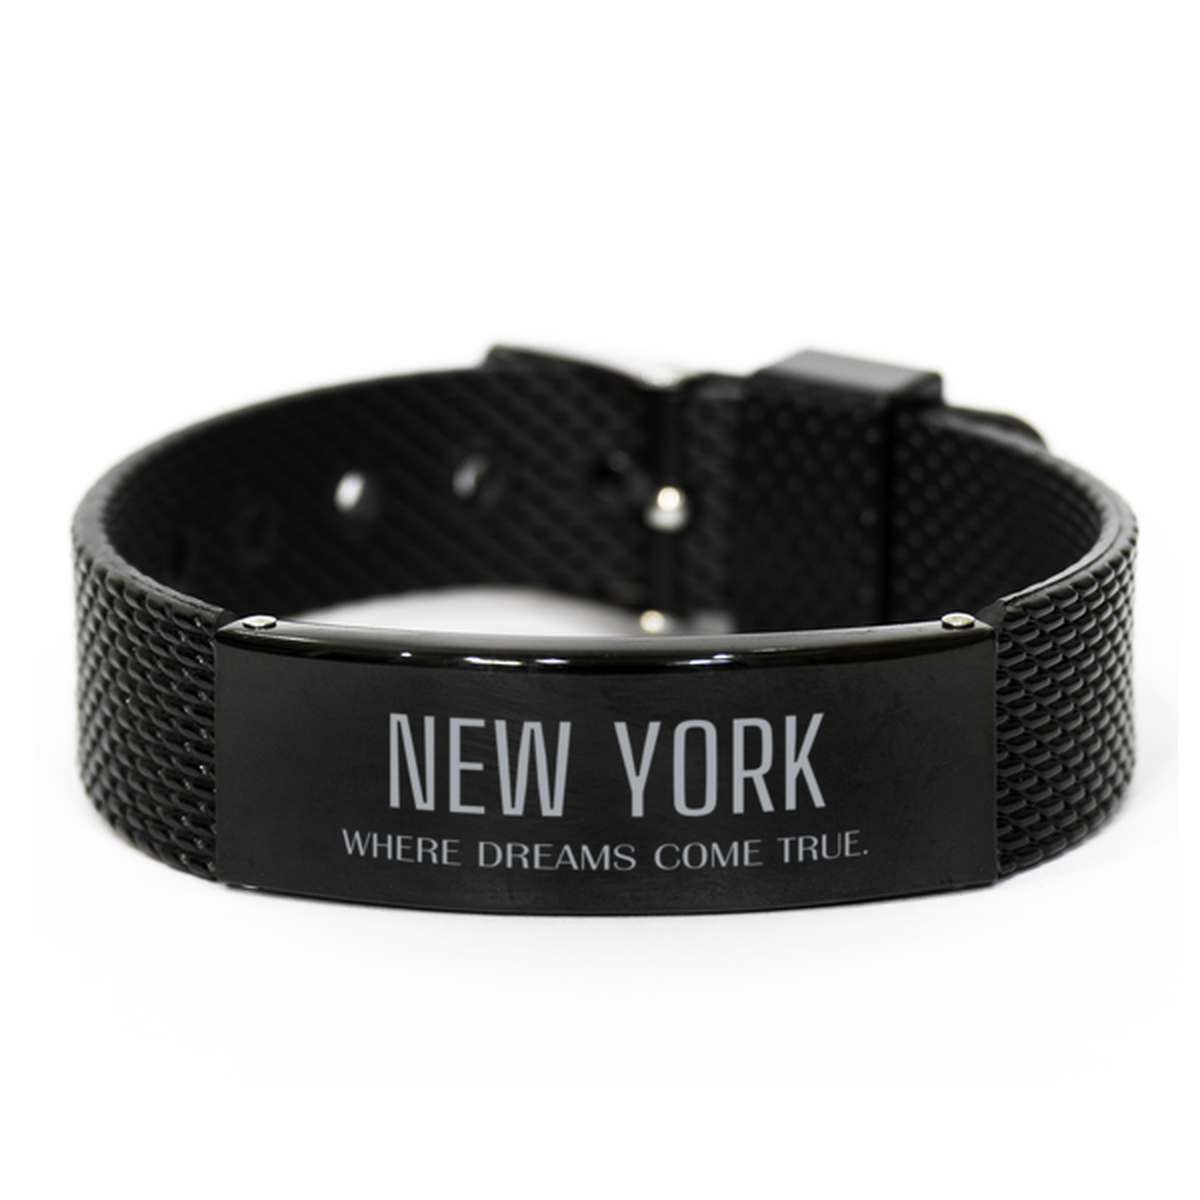 Love New York State Black Shark Mesh Bracelet, New York Where dreams come true, Birthday Inspirational Gifts For New York Men, Women, Friends